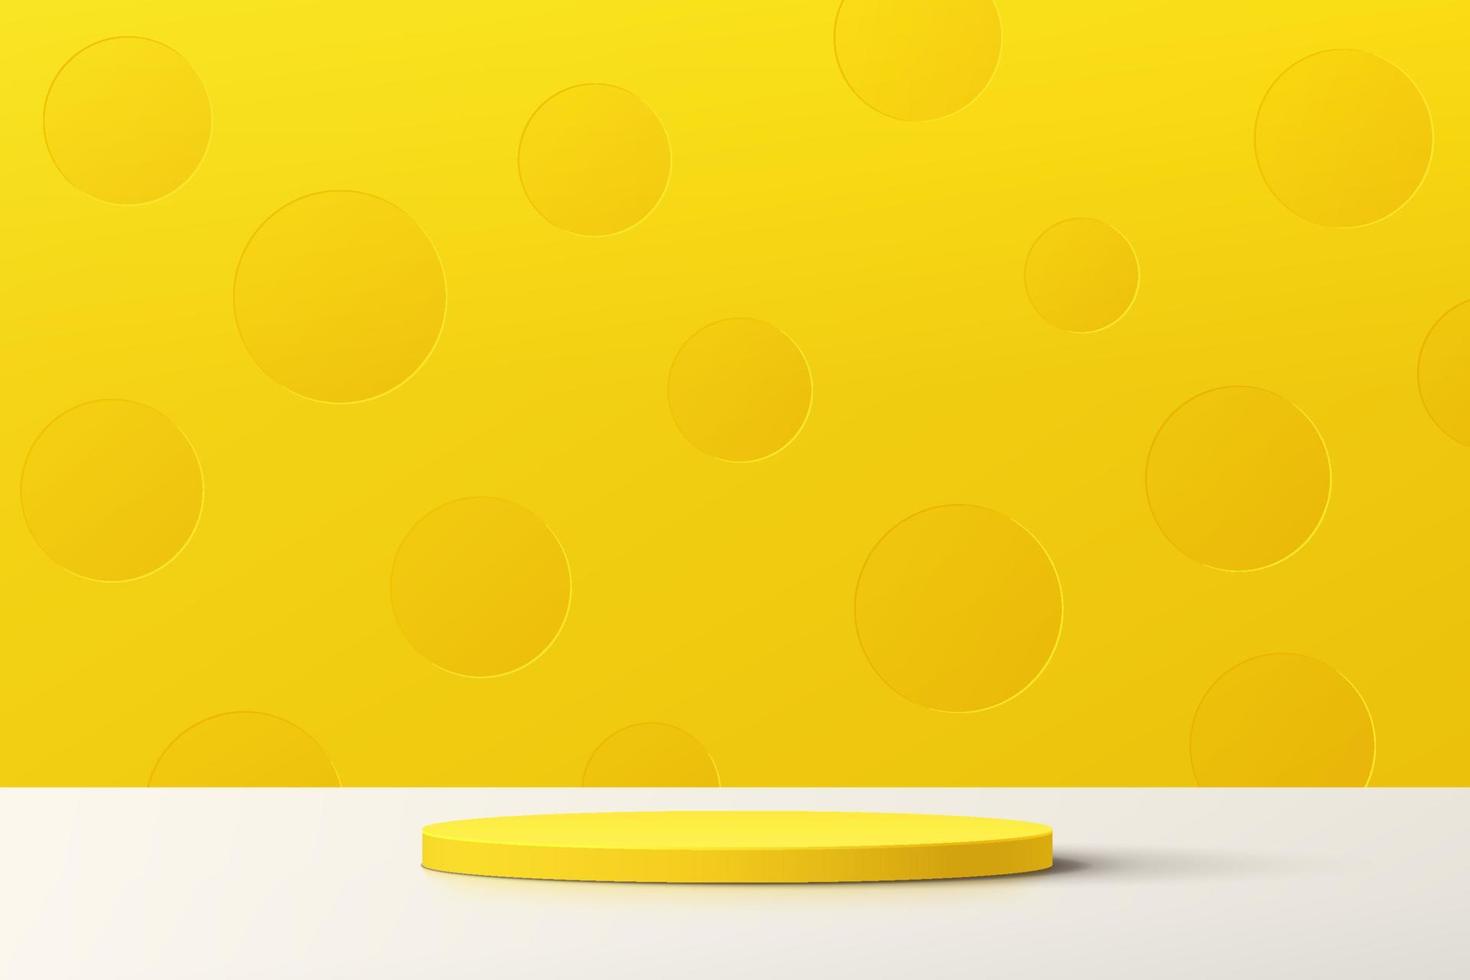 podio astratto 3d con piedistallo cilindro giallo con scena a parete minima a pois giallo pastello. progettazione geometrica della piattaforma di rendering vettoriale per la presentazione di prodotti cosmetici.